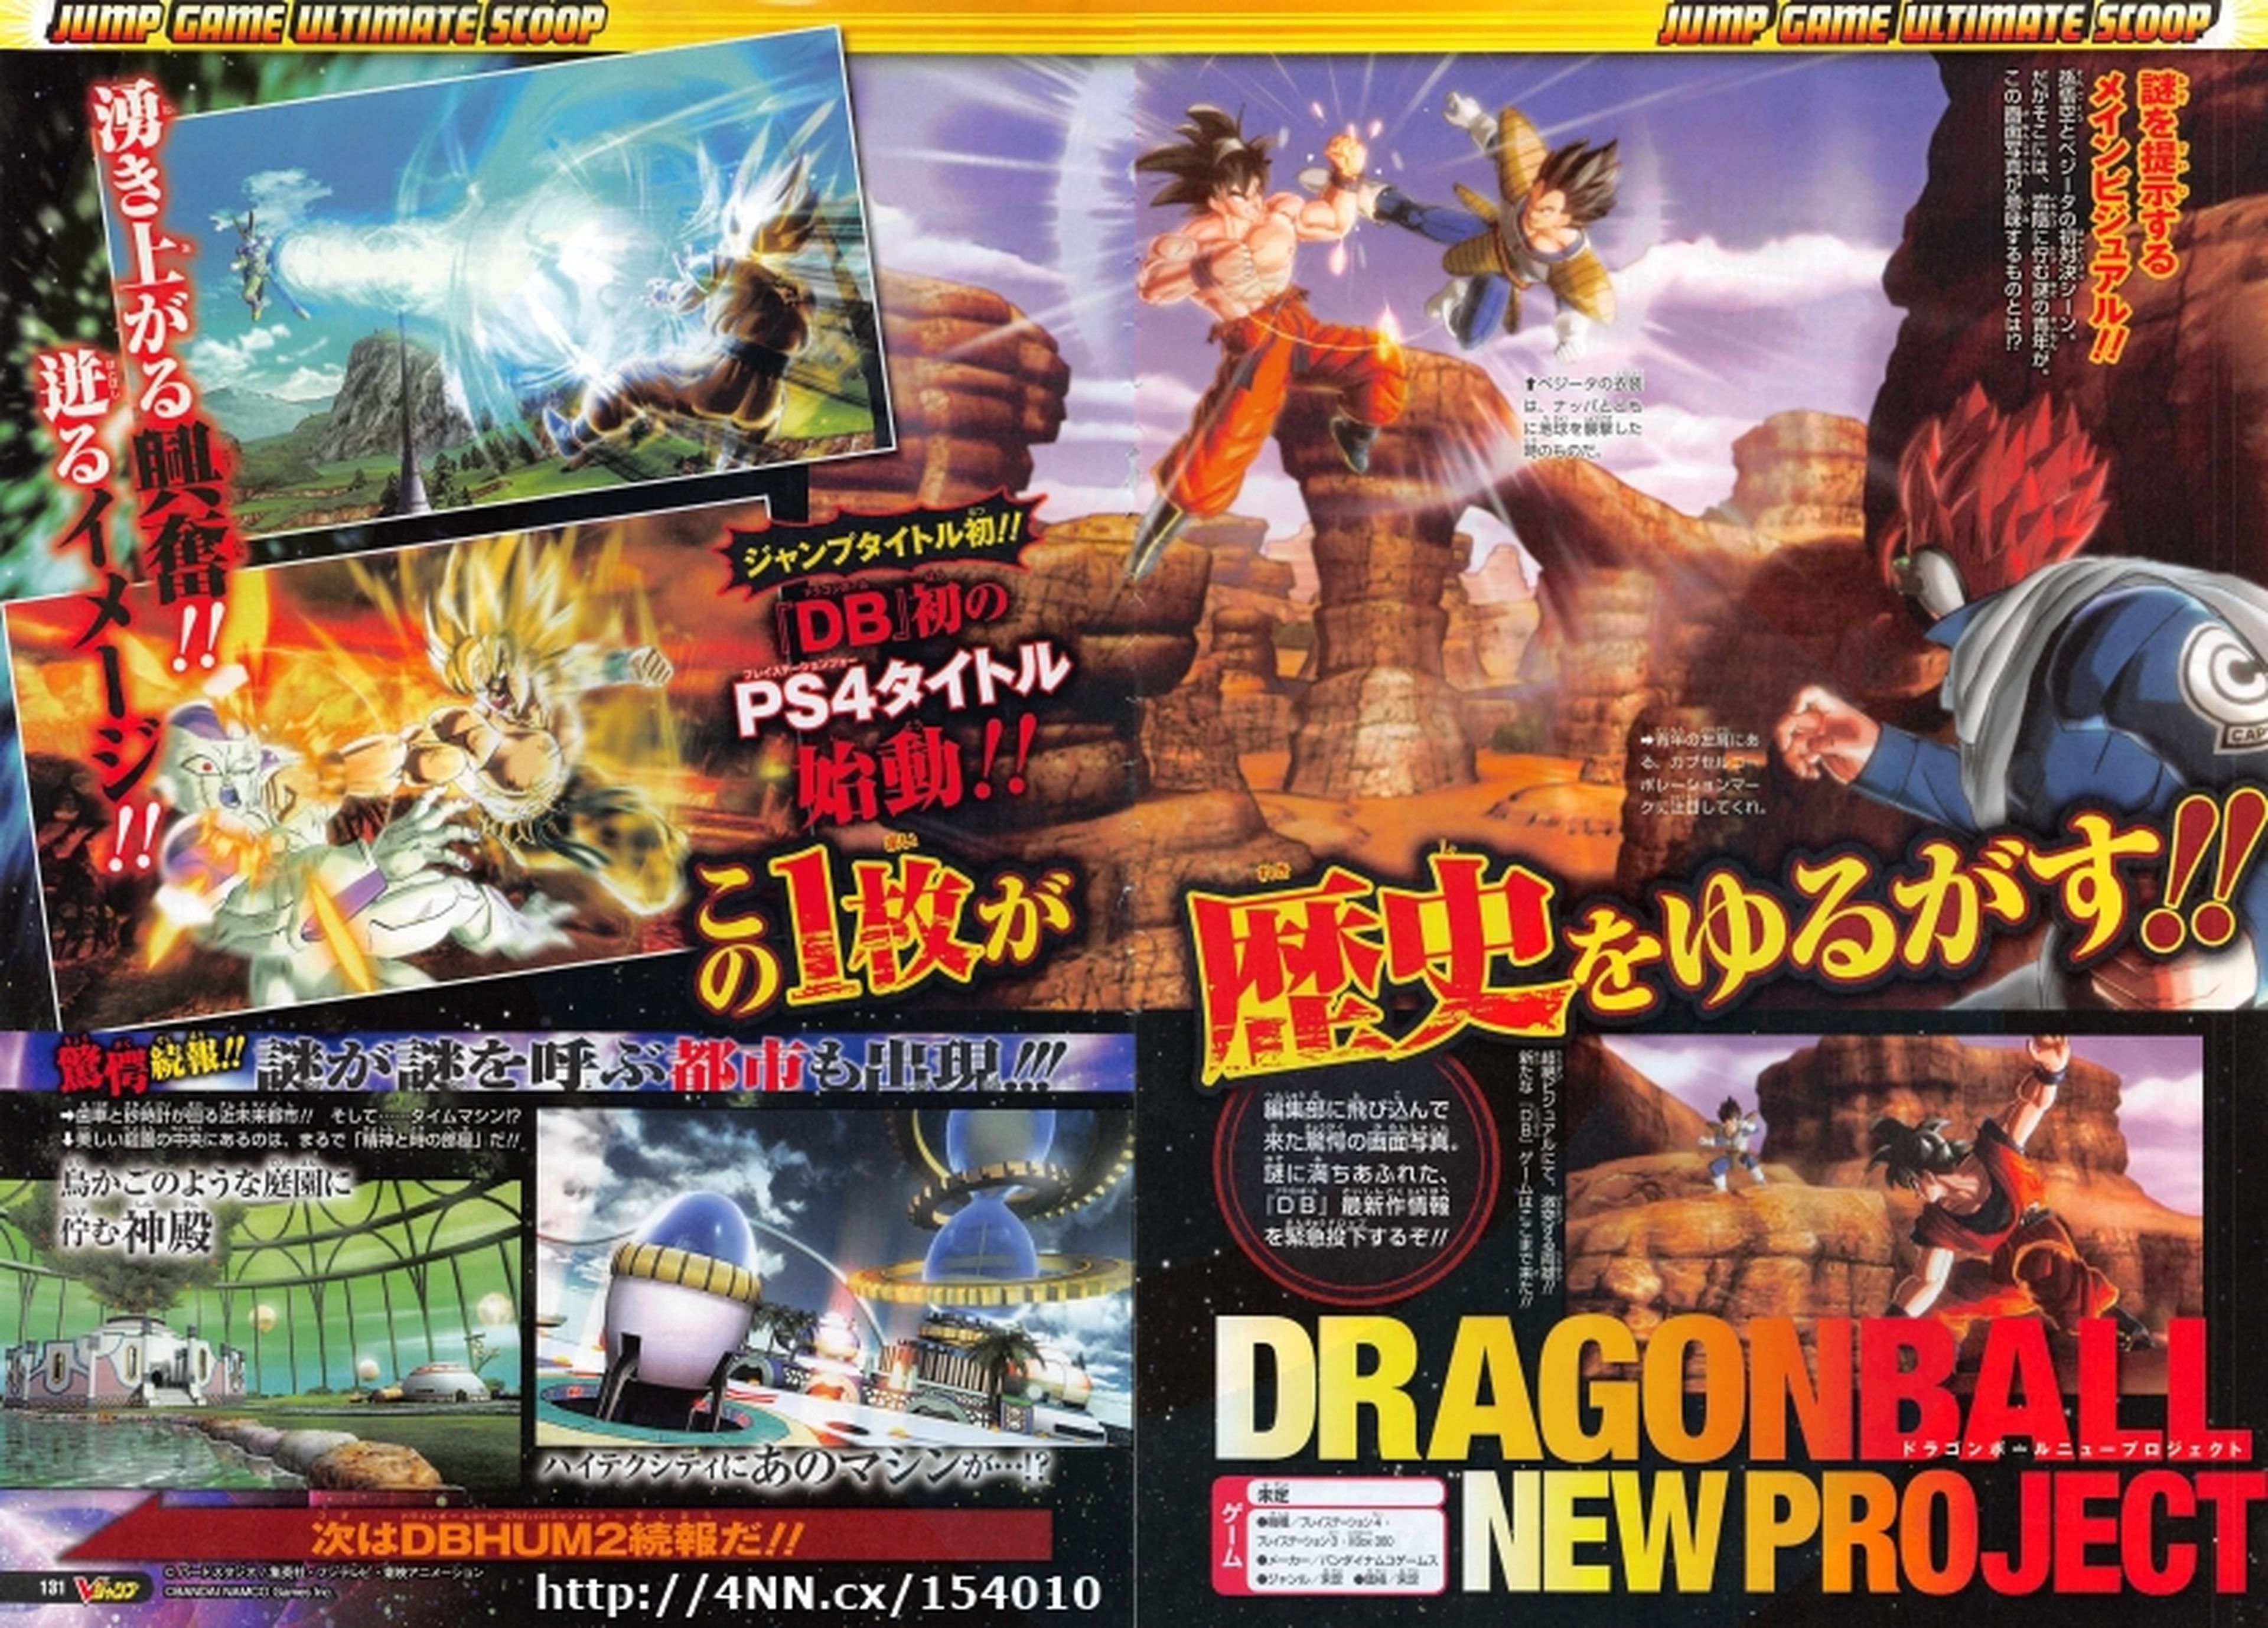 Un nuevo juego de Dragon Ball para PS4